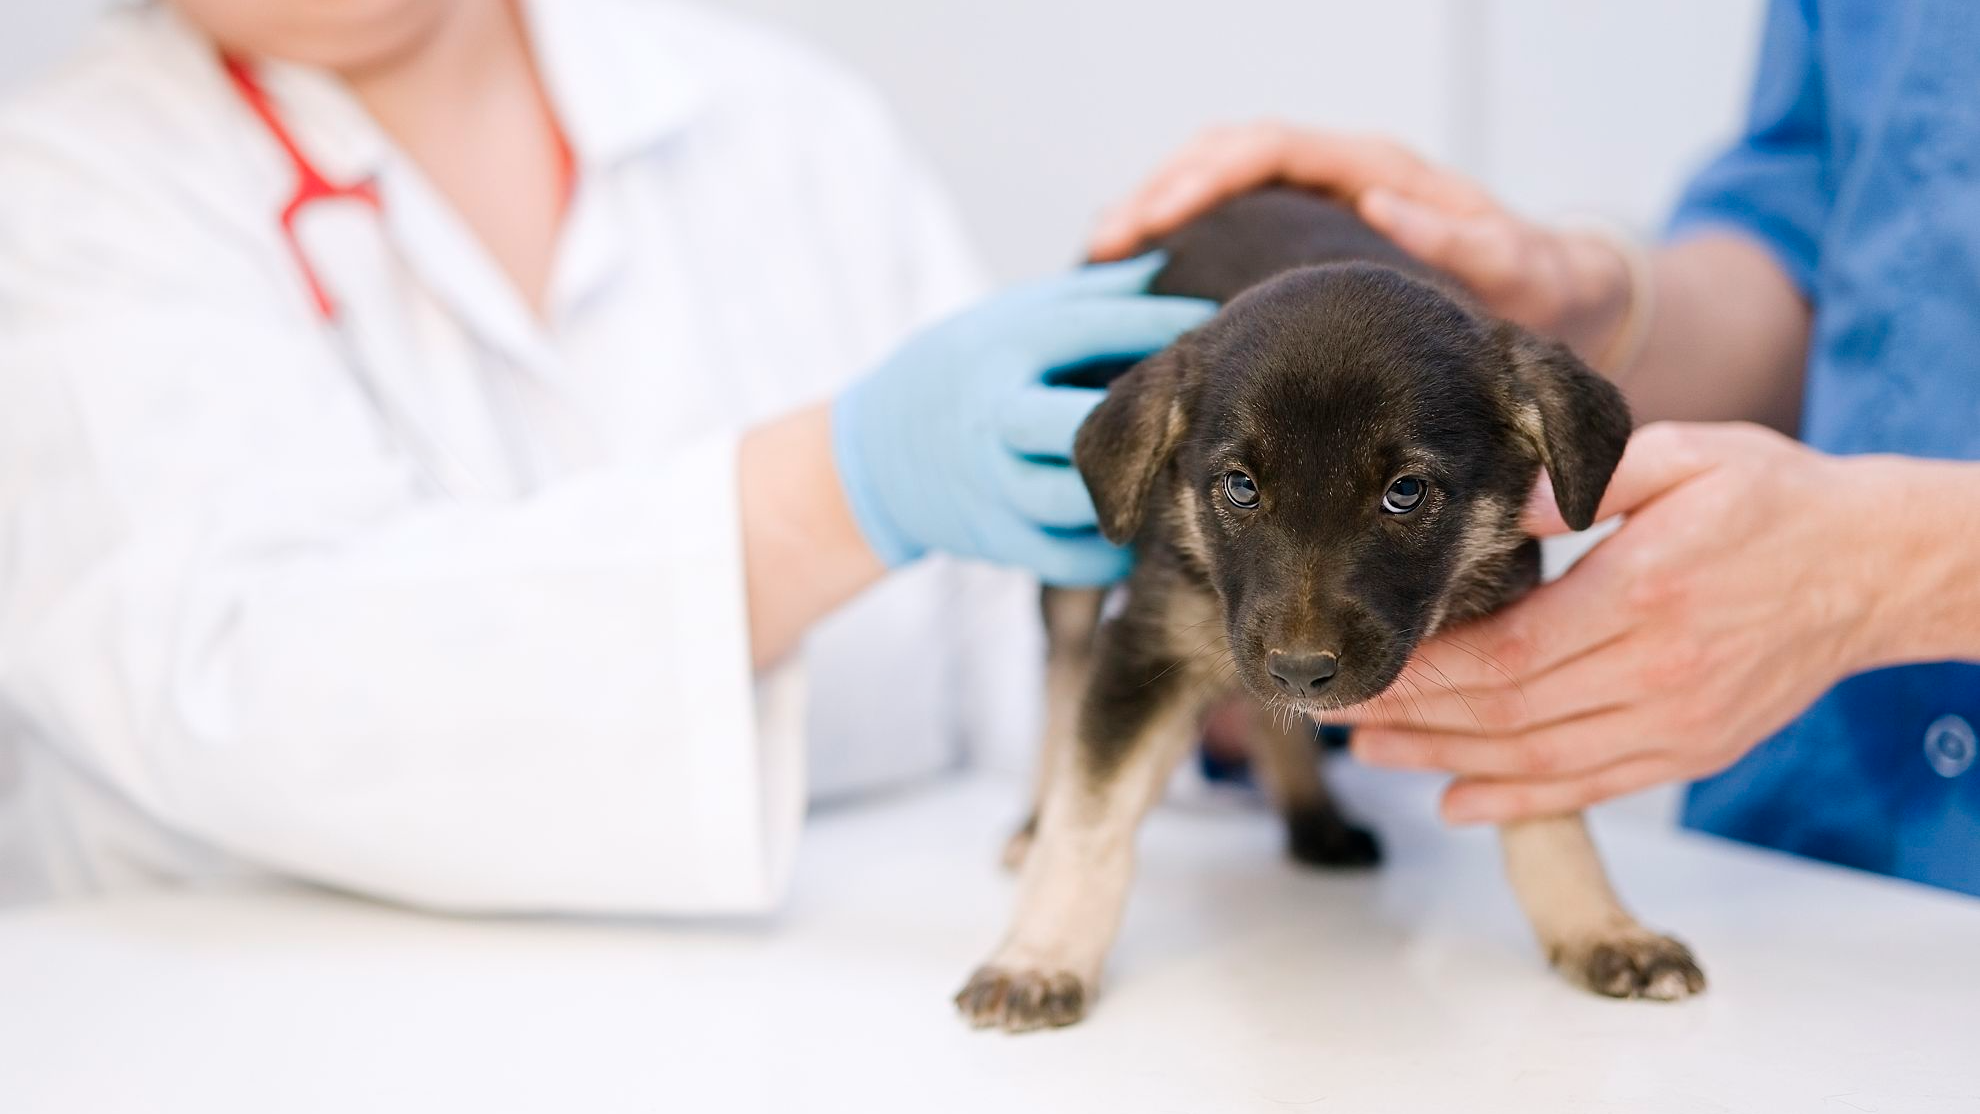 Dierenarts onderzoekt een puppy die staat op de behandeltafel